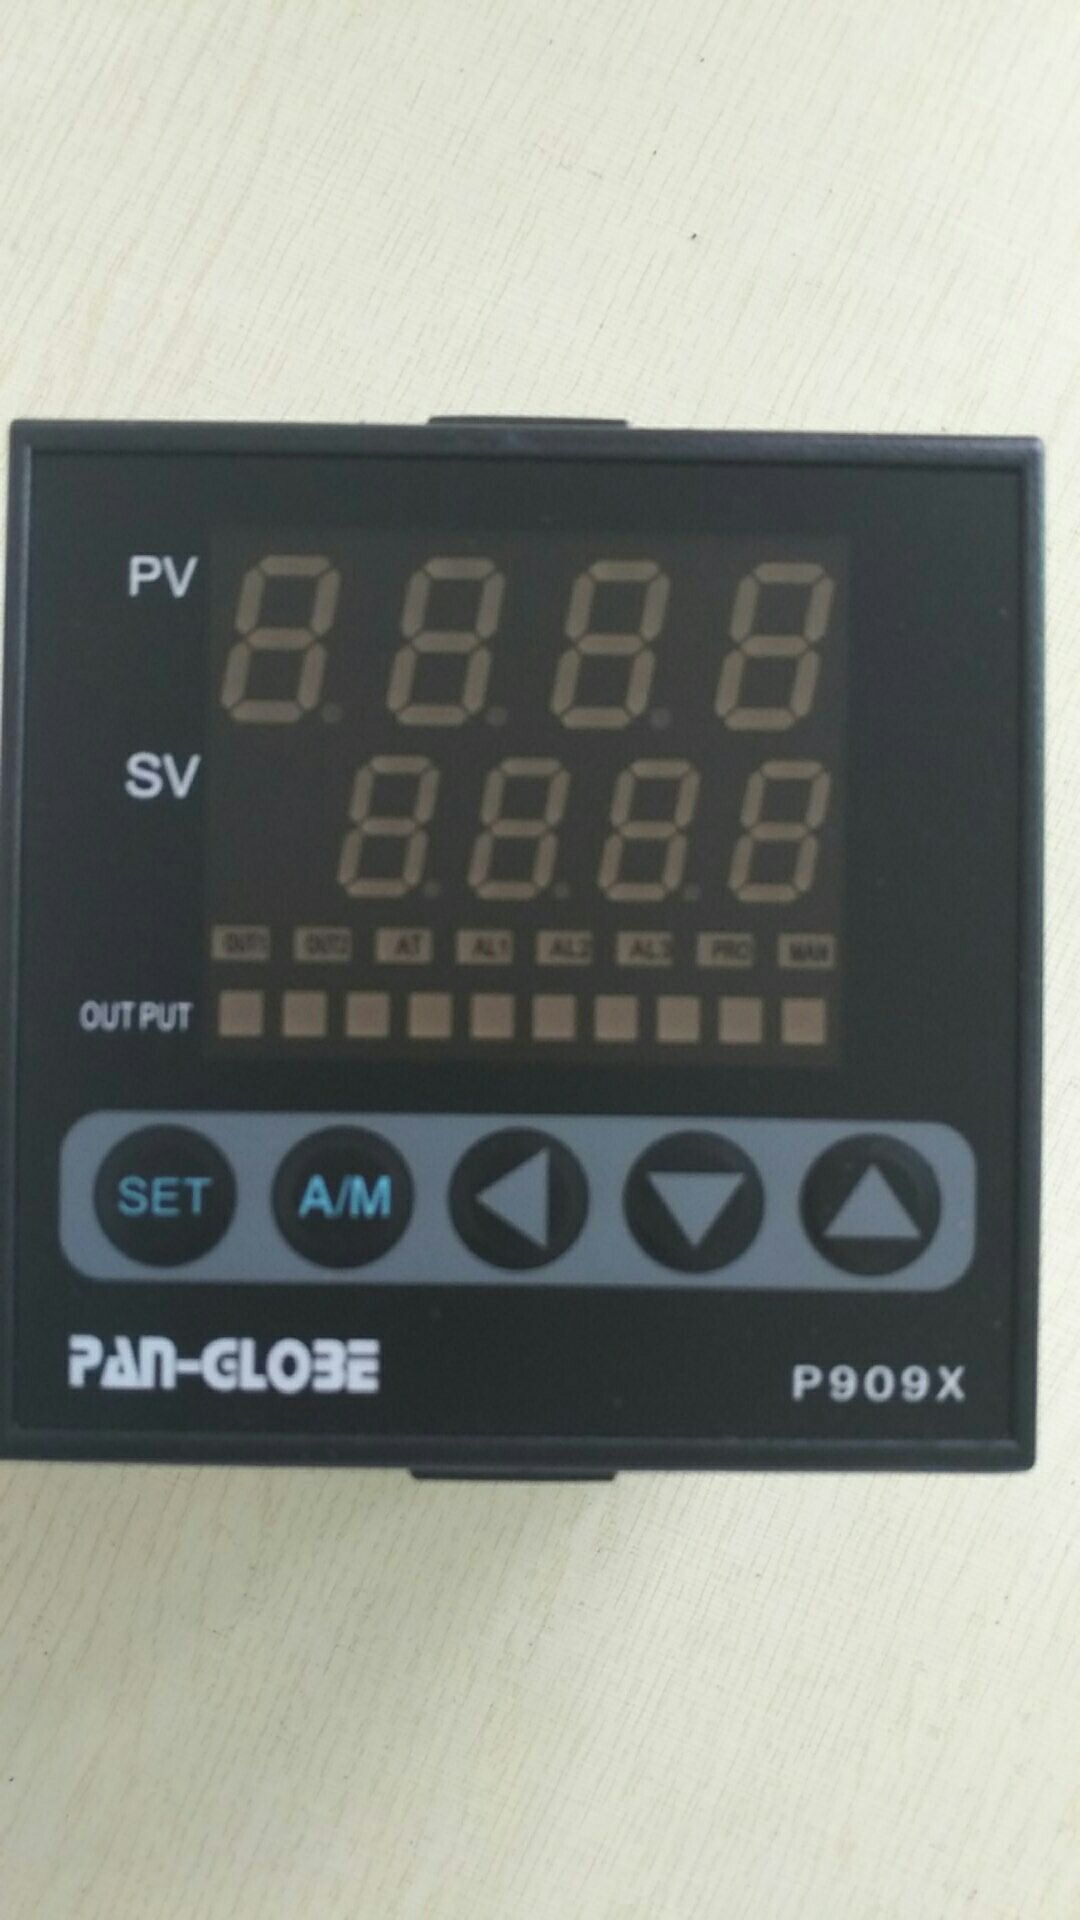 P909X-301-020-000 PAN-GLO3Eʾ